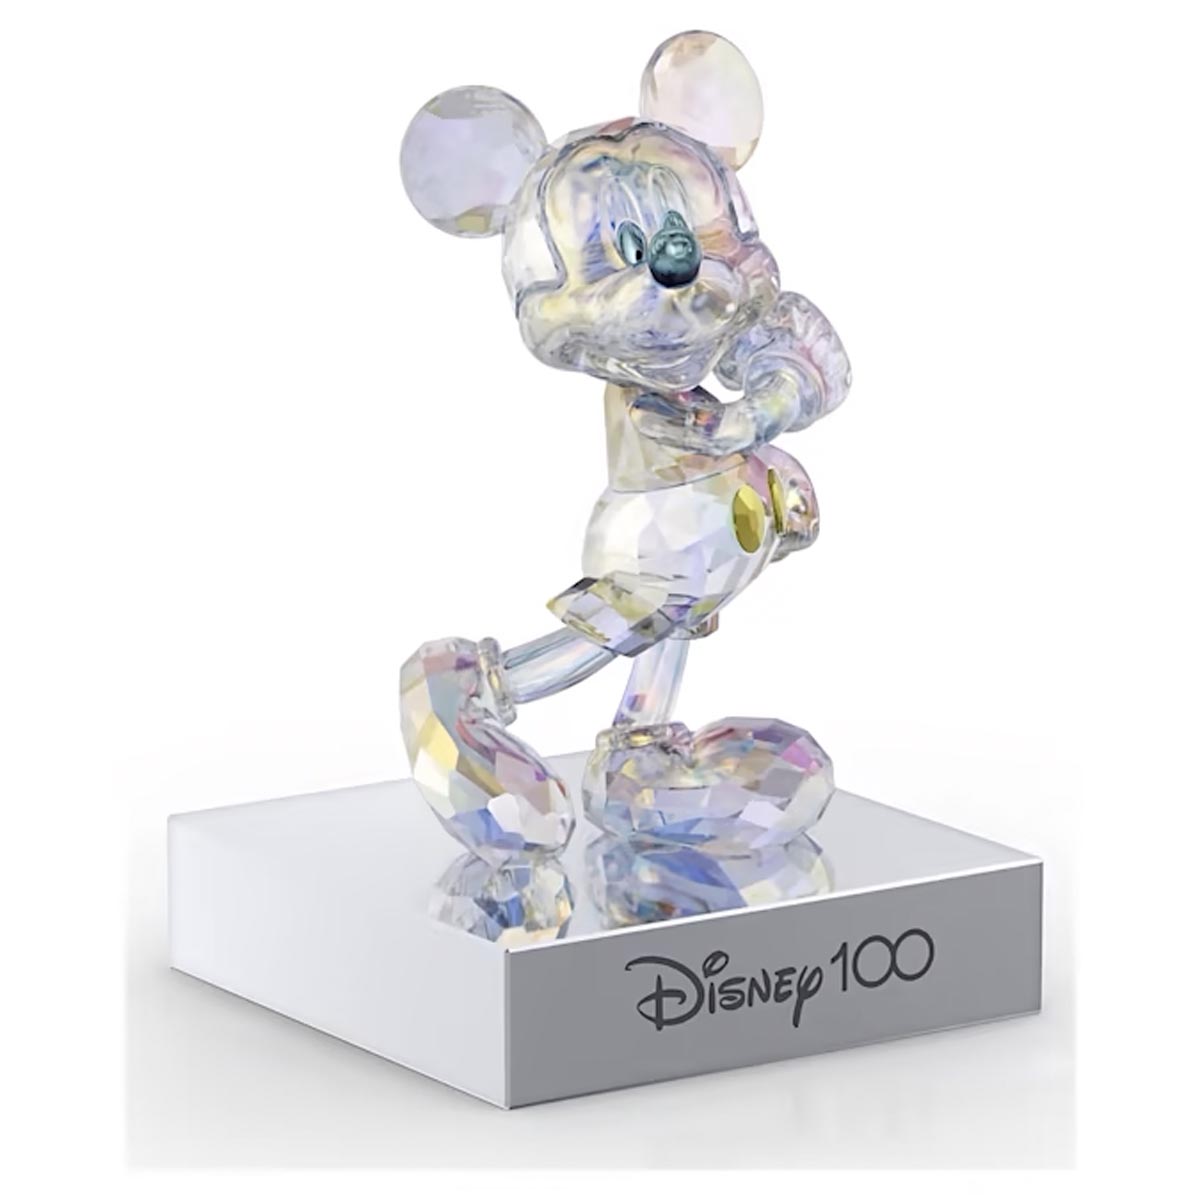 Swarovski Crystal Disney100 Micky Mouse